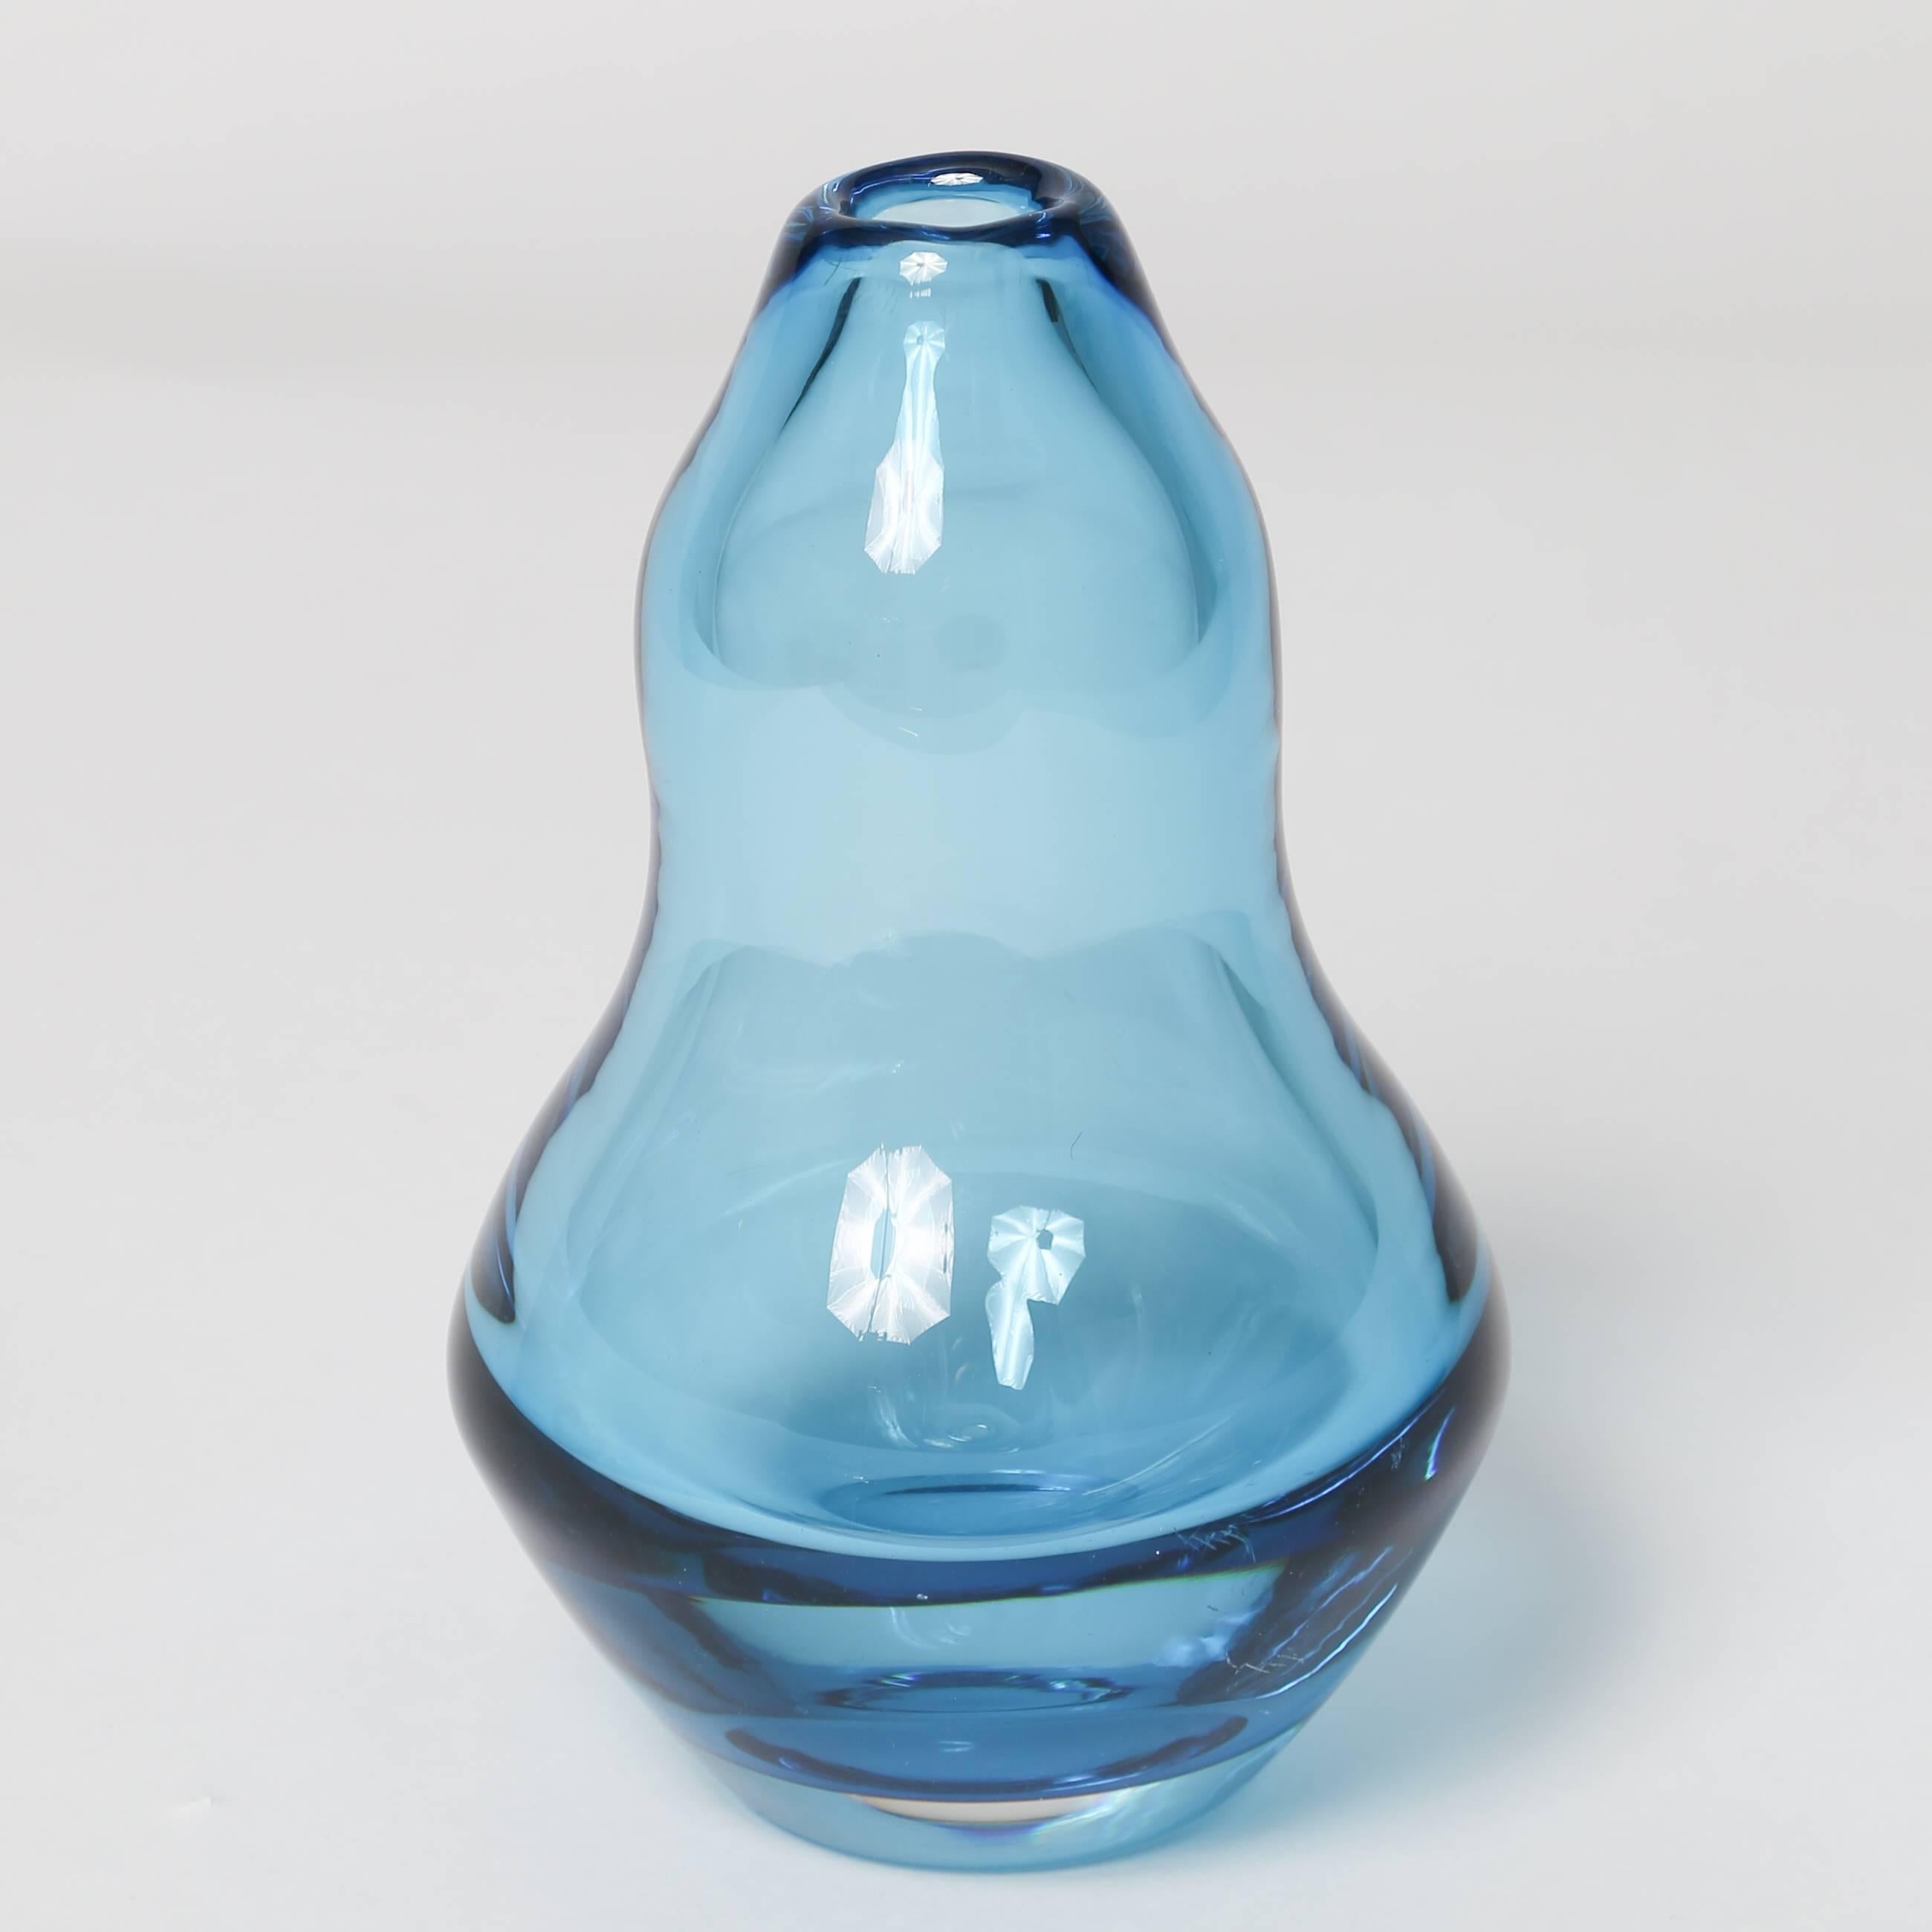 orrefors blue glass vase